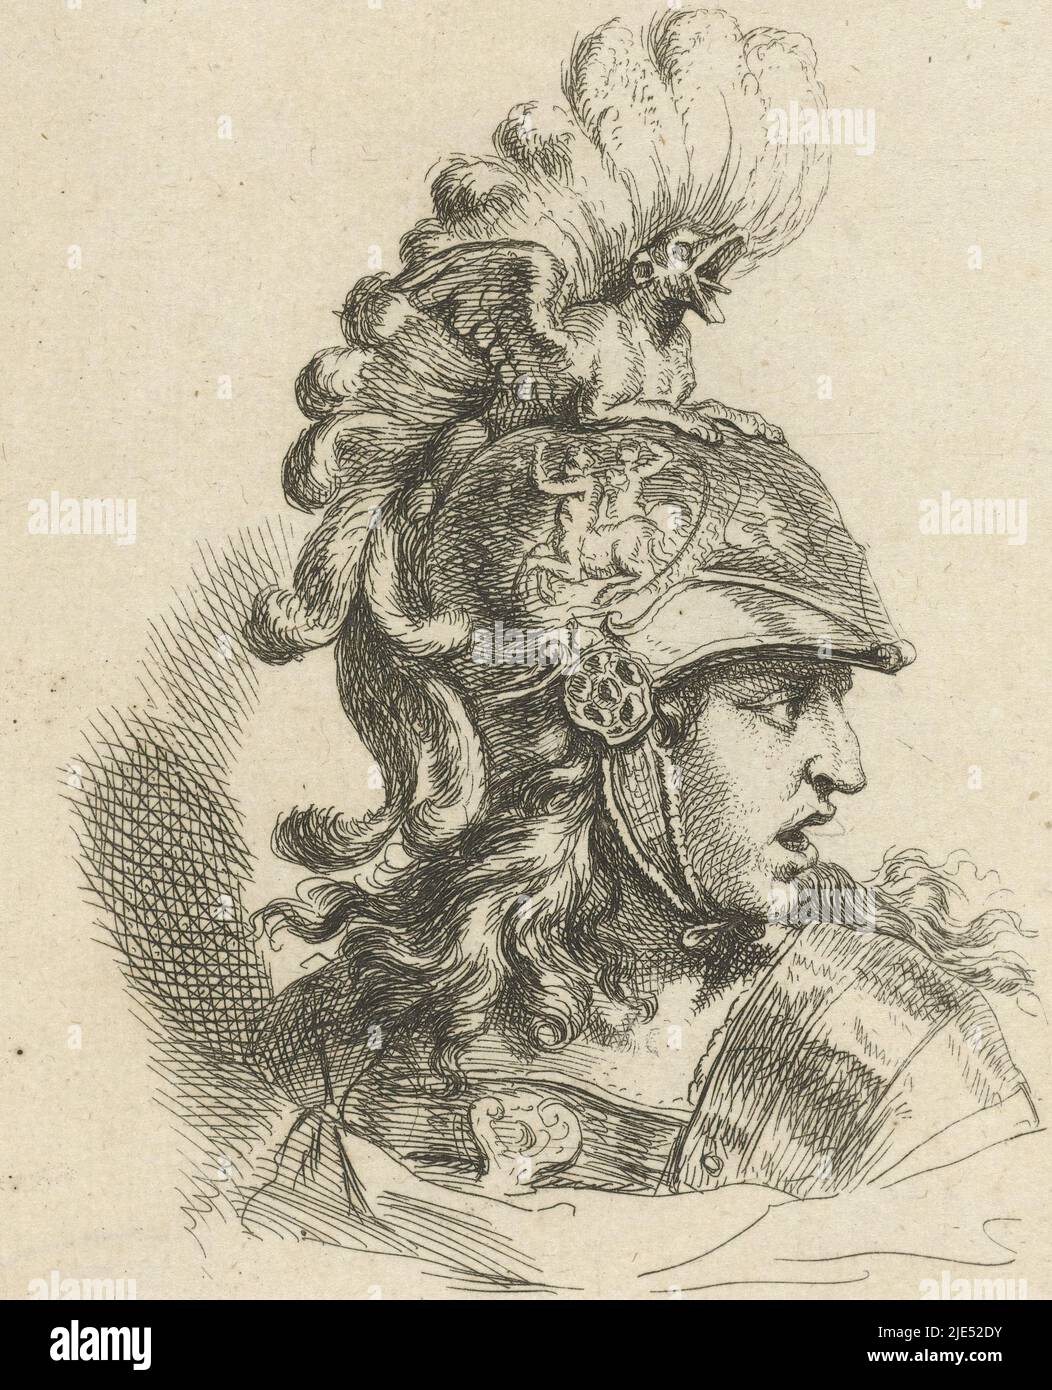 La tête de Minerva, et profilée à droite, avec un casque richement décoré, tête de Minerva, imprimerie: Gerard de Lairesse, 1670, papier, gravure, h 146 mm × l 105 mm Banque D'Images